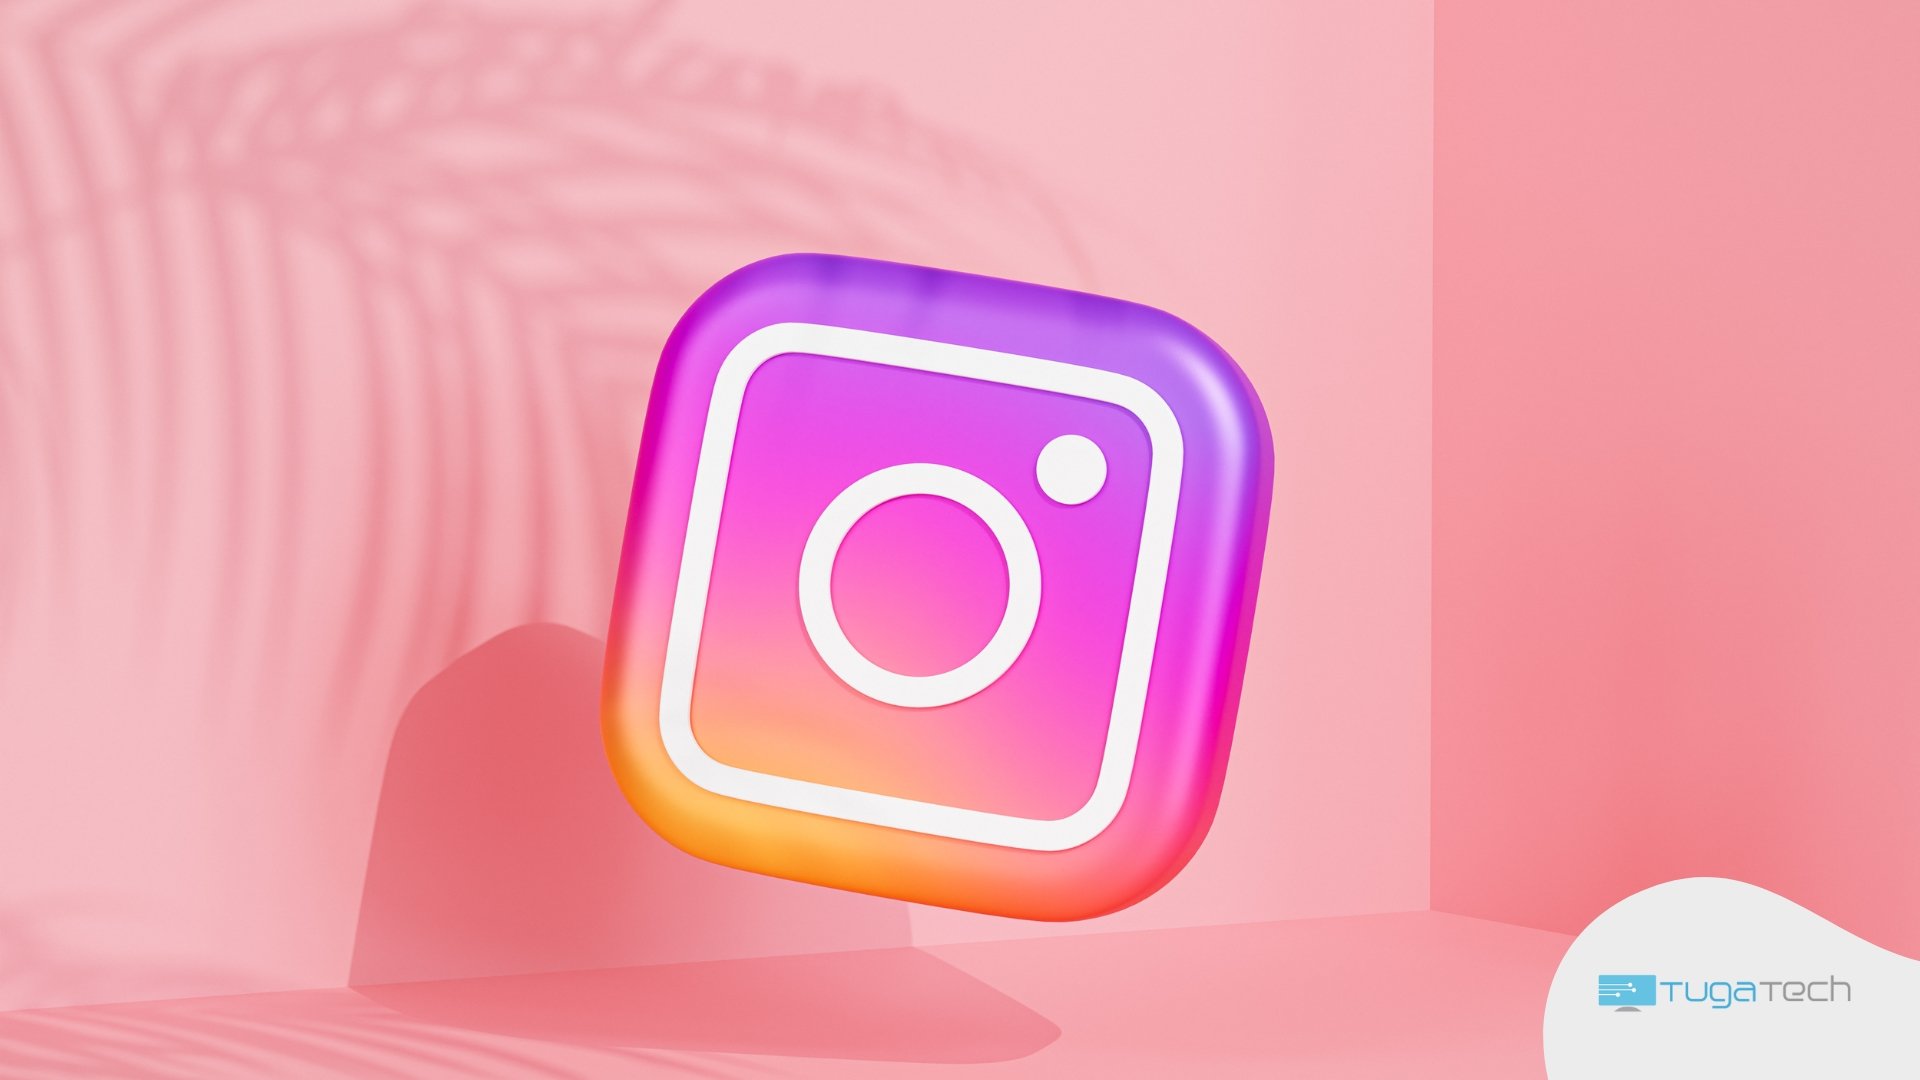 icone 3d do instagram em fundo cor de rosa